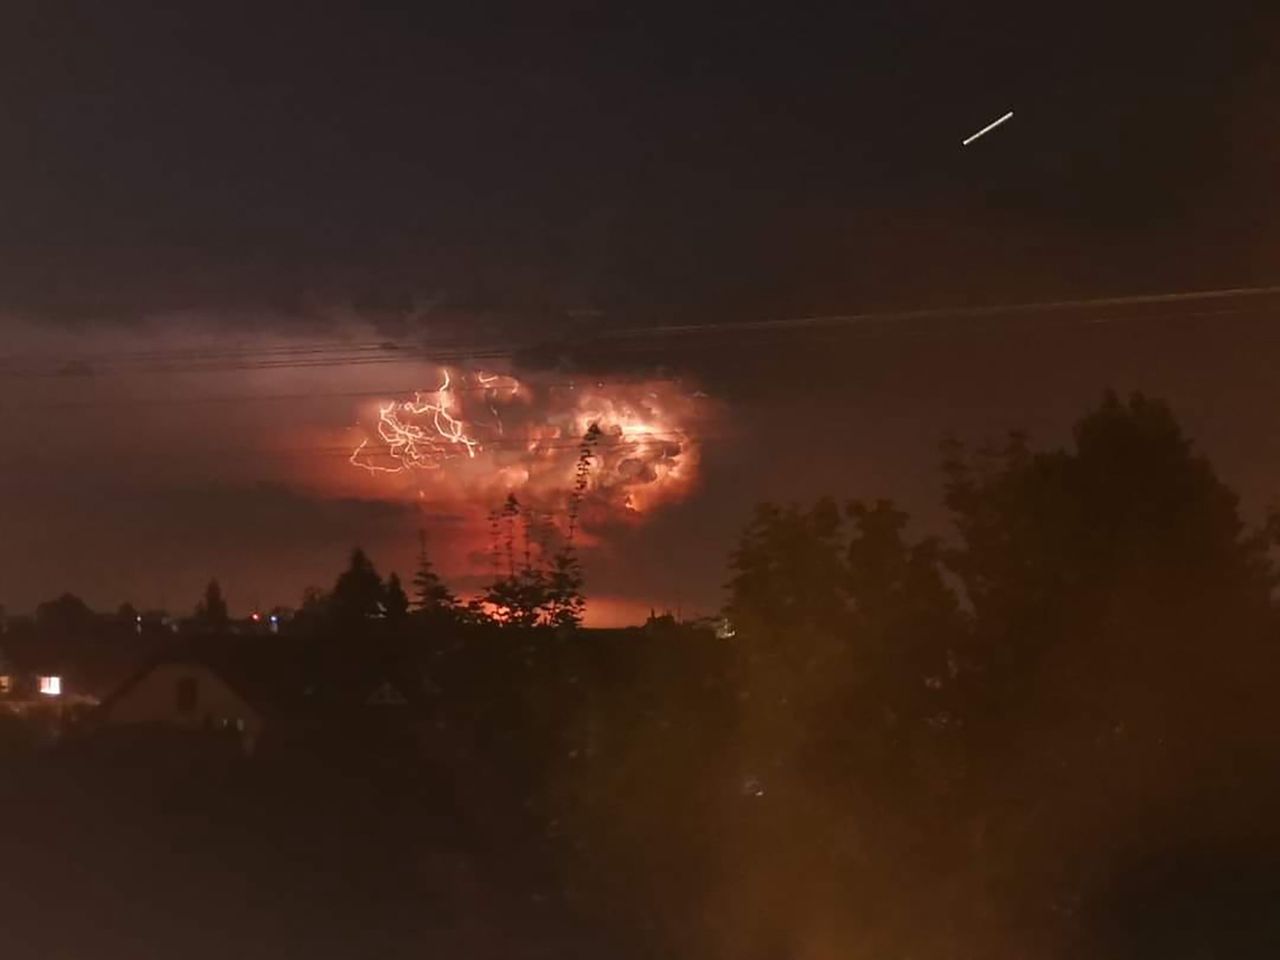 Niesamowite burze dalej nad Polską i sąsiadami. Zdjęcia jeżą włos na karku